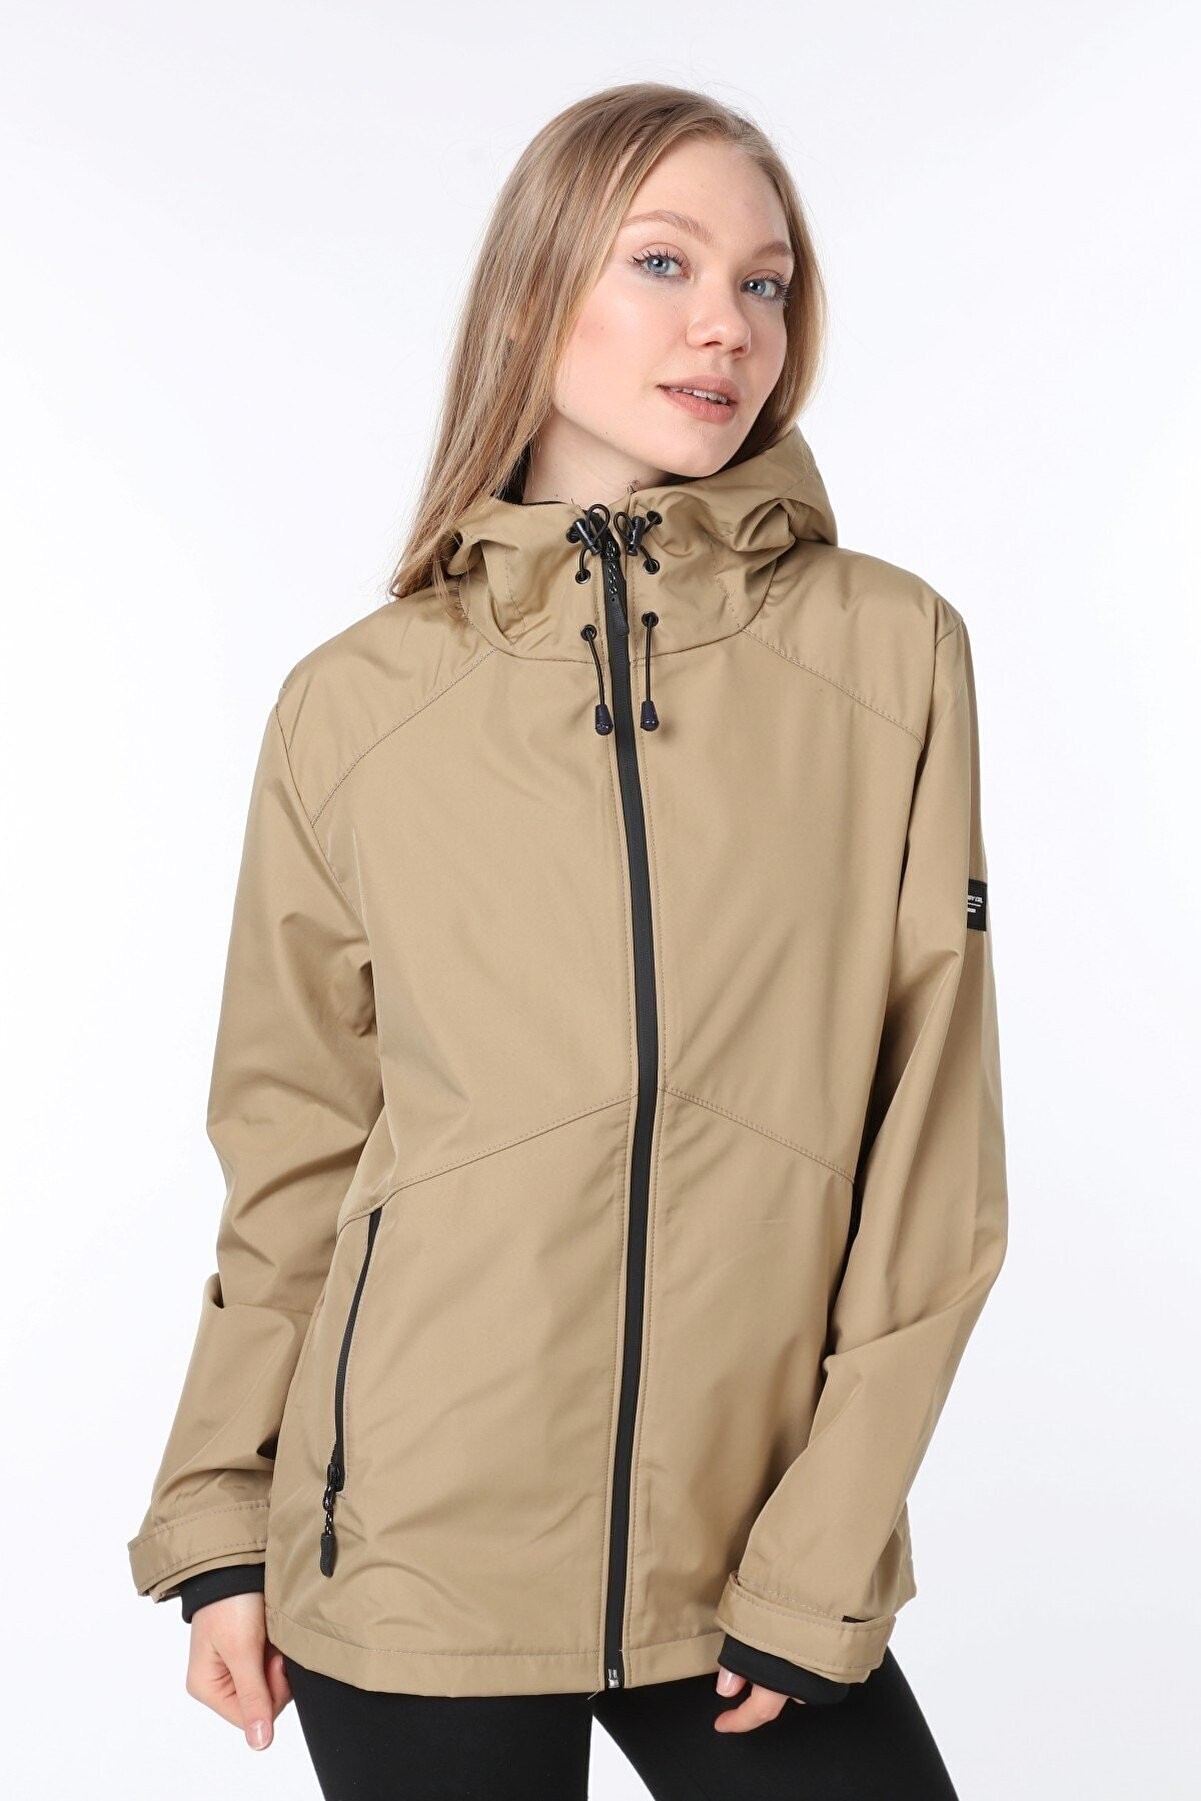 Ghassy Co.Kadın Rüzgarlık/Yağmurluk Omuz Detaylı Mevsimlik Taş Spor Ceket - BEJ